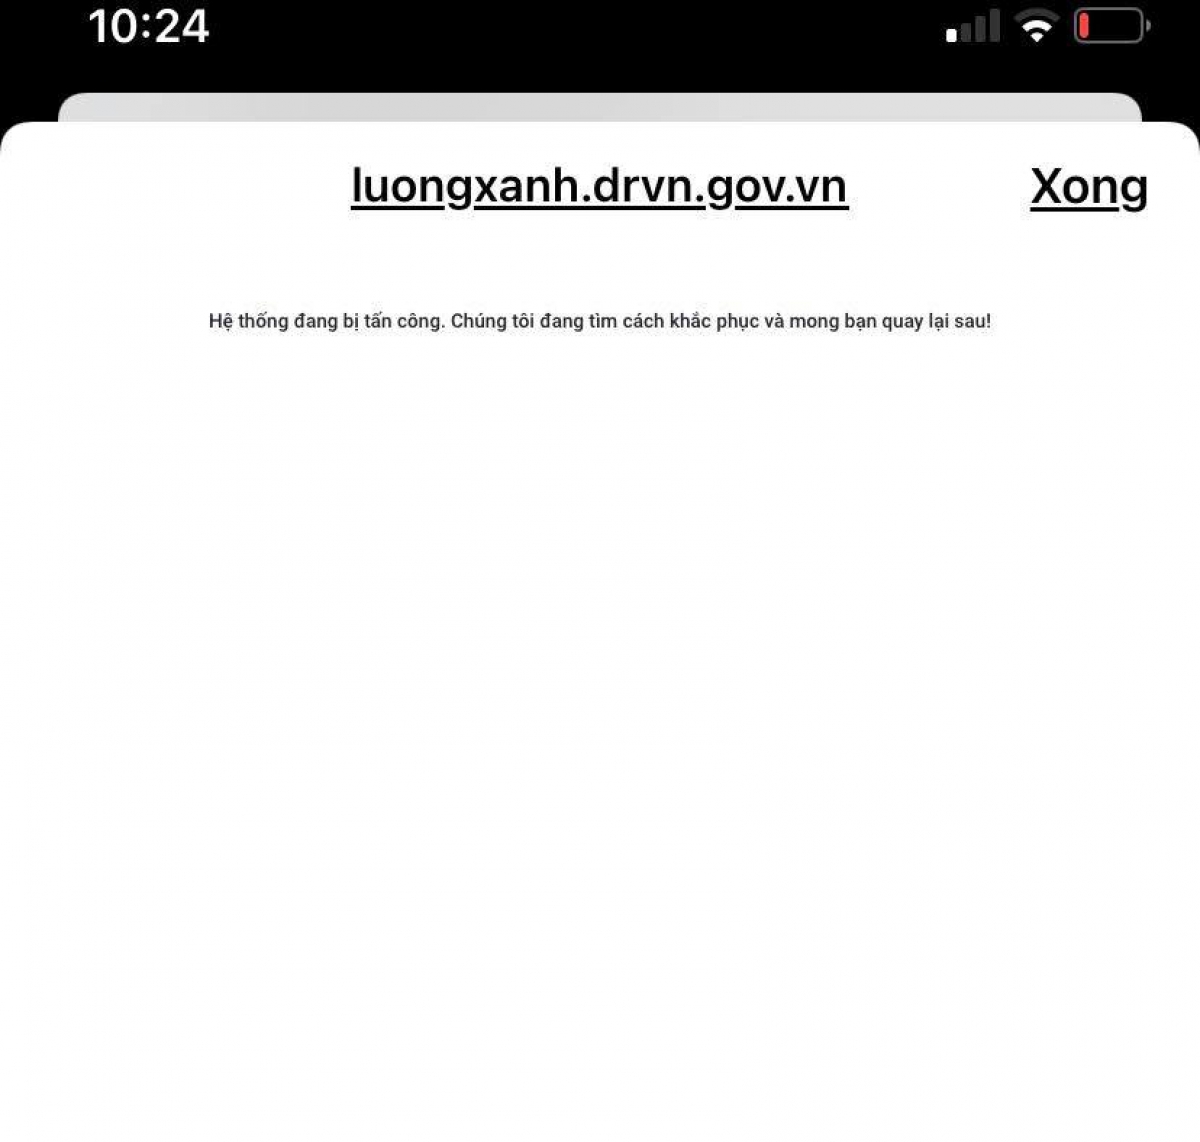 Website đăng ký luồng xanh quốc gia QR Code bị tin tặc tấn công - Ảnh 1.